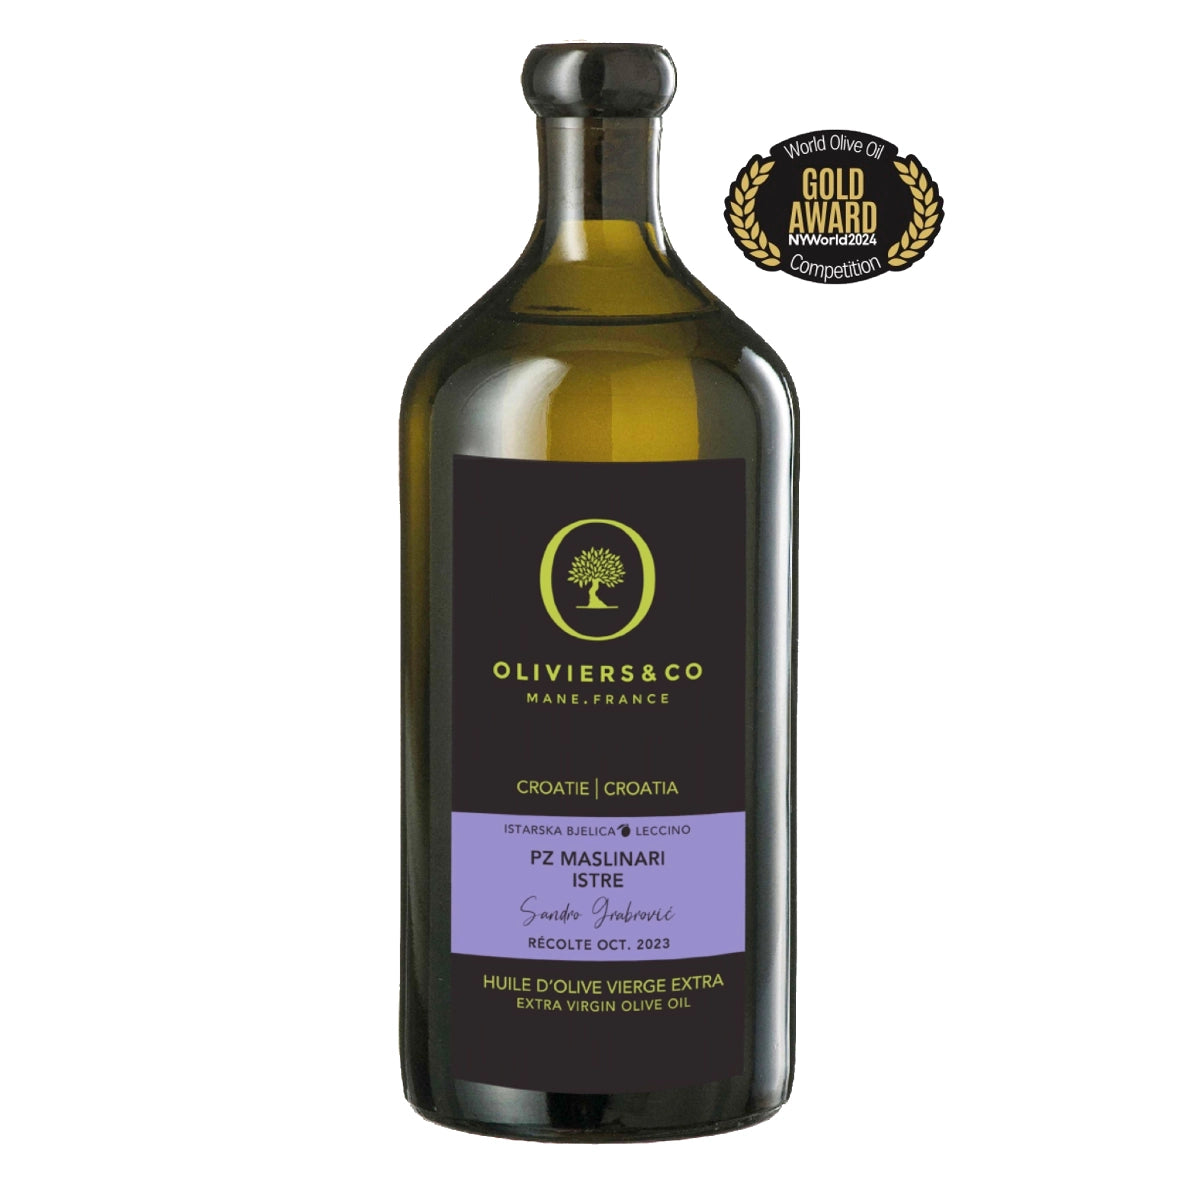 Guldvinder ekstra jomfru olivenolie Maslinari Istre fra Oliviers & Co